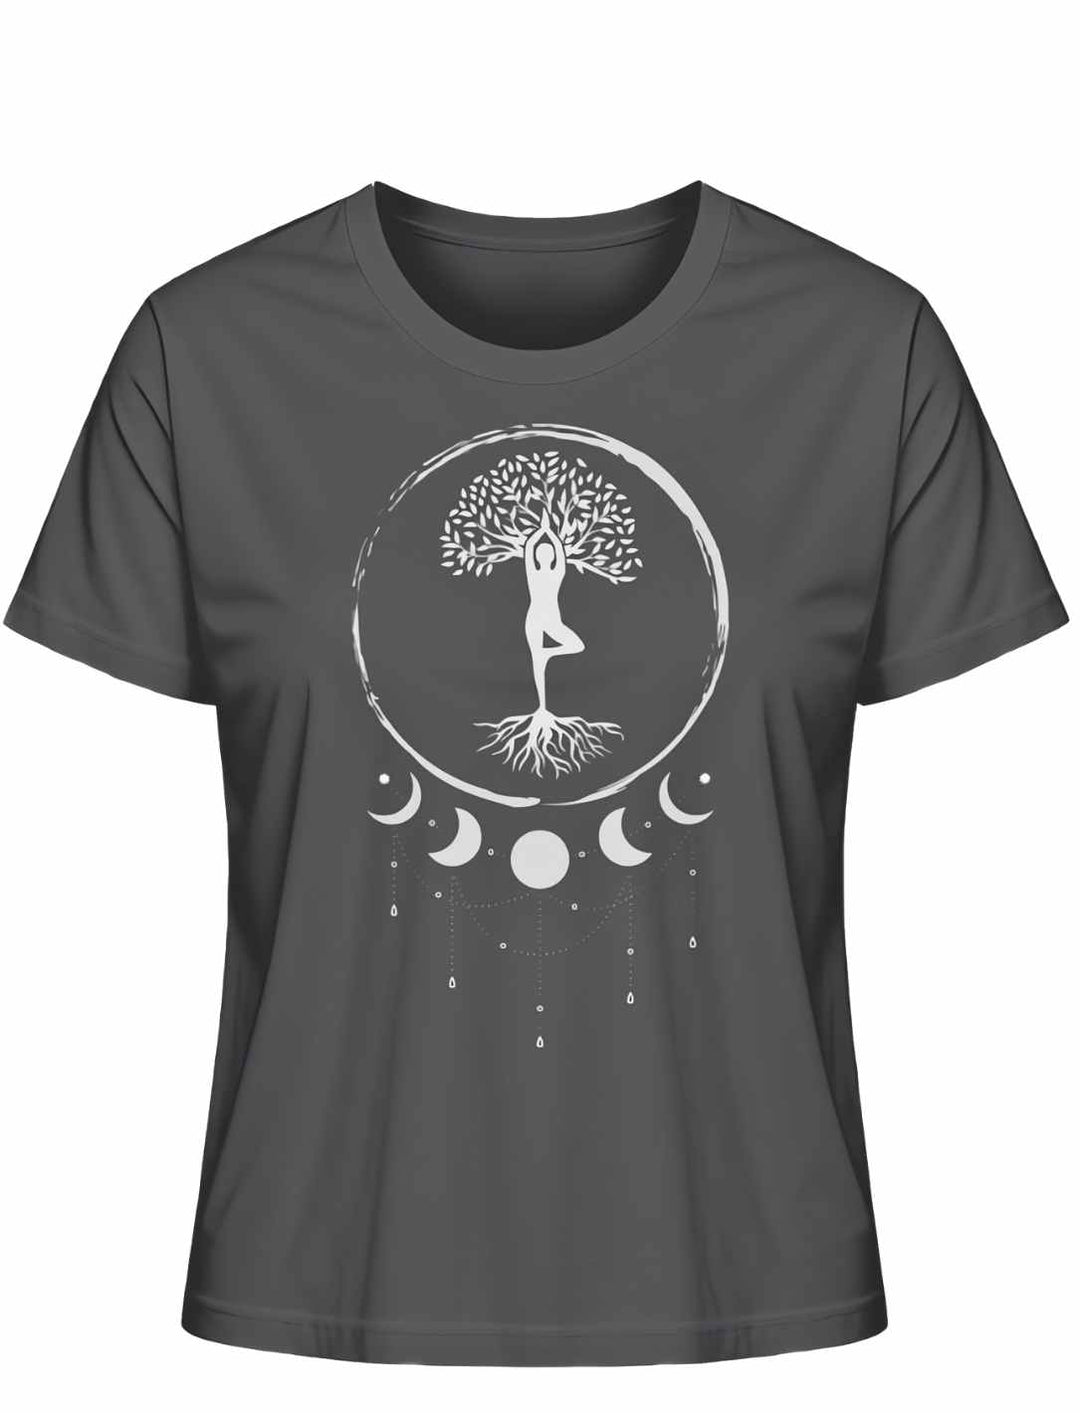 Seelenbaum der Mondträumer T-Shirt in Anthrazit, entspannte Präsentation auf Weiß - Runental.de